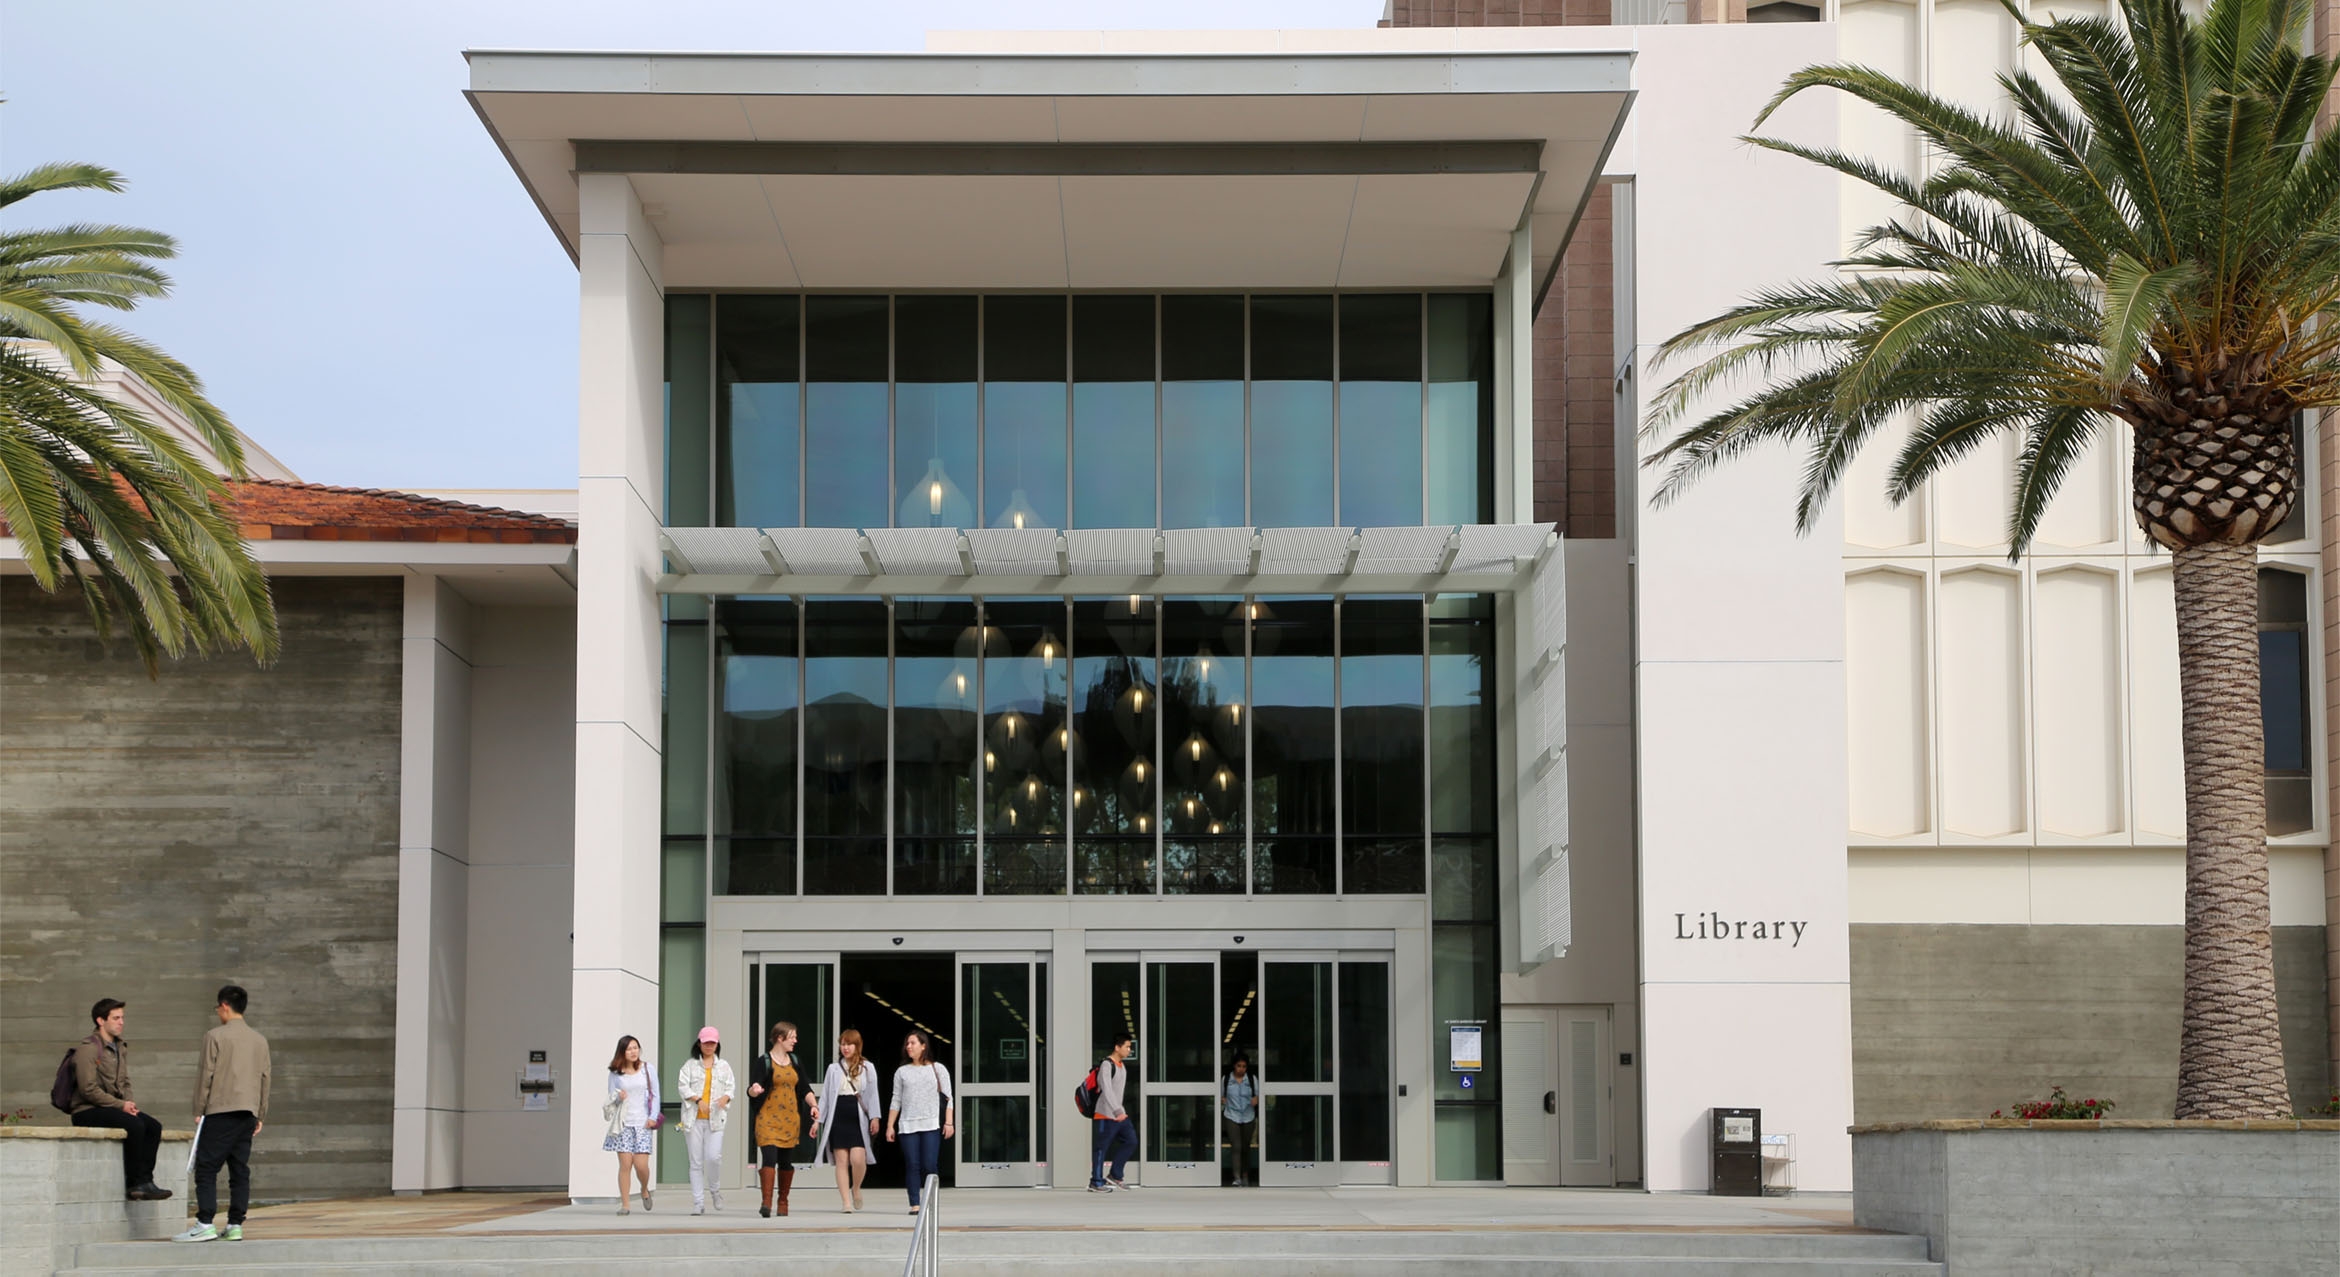 The exterior of the UC Santa Barbara Library